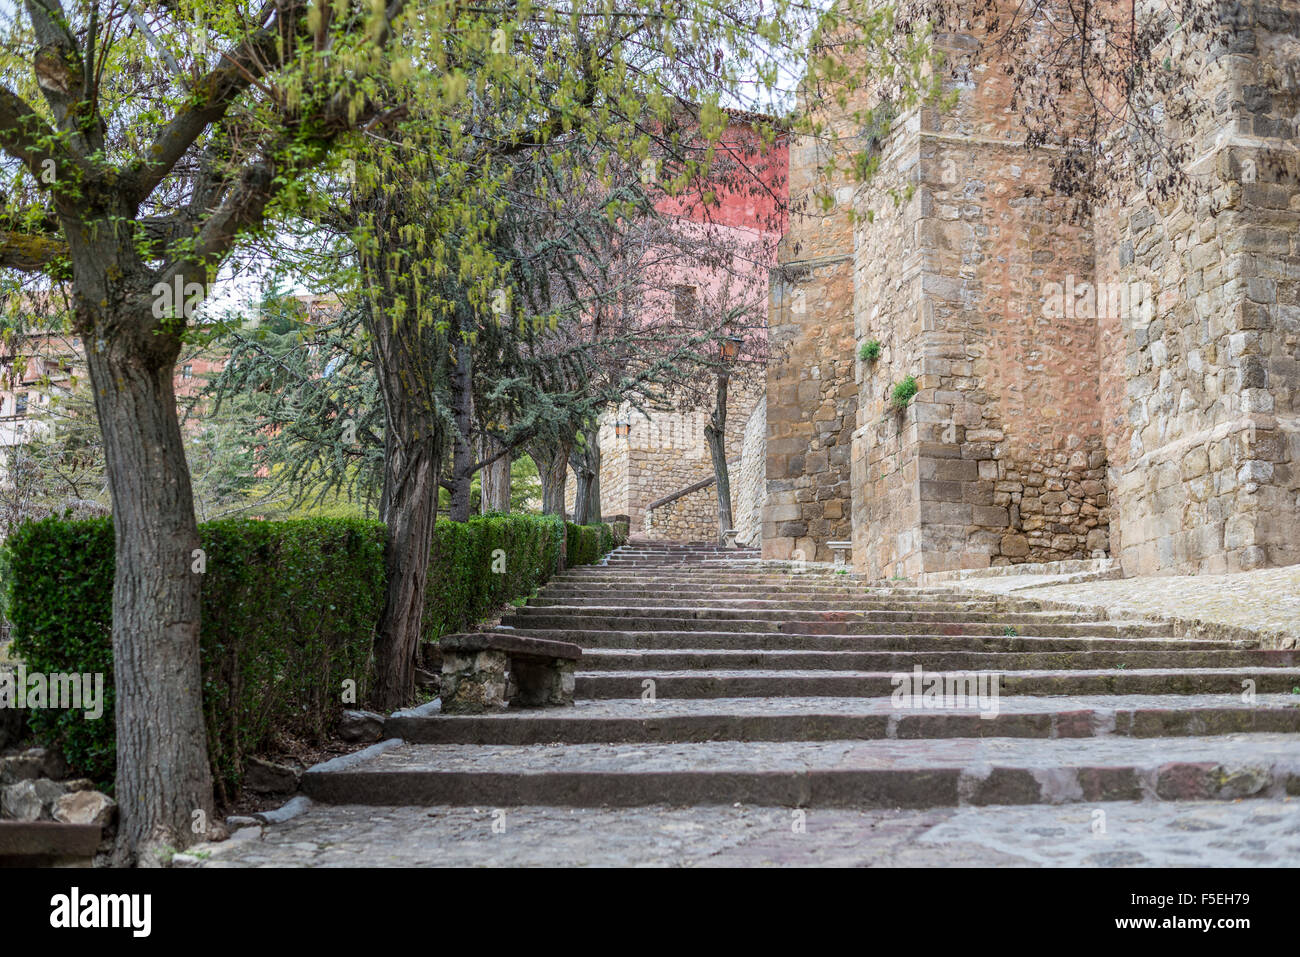 Route du patrimoine du village de Albarracin et médiévale de style mudéjar. Teruel, Aragon, Espagne Banque D'Images